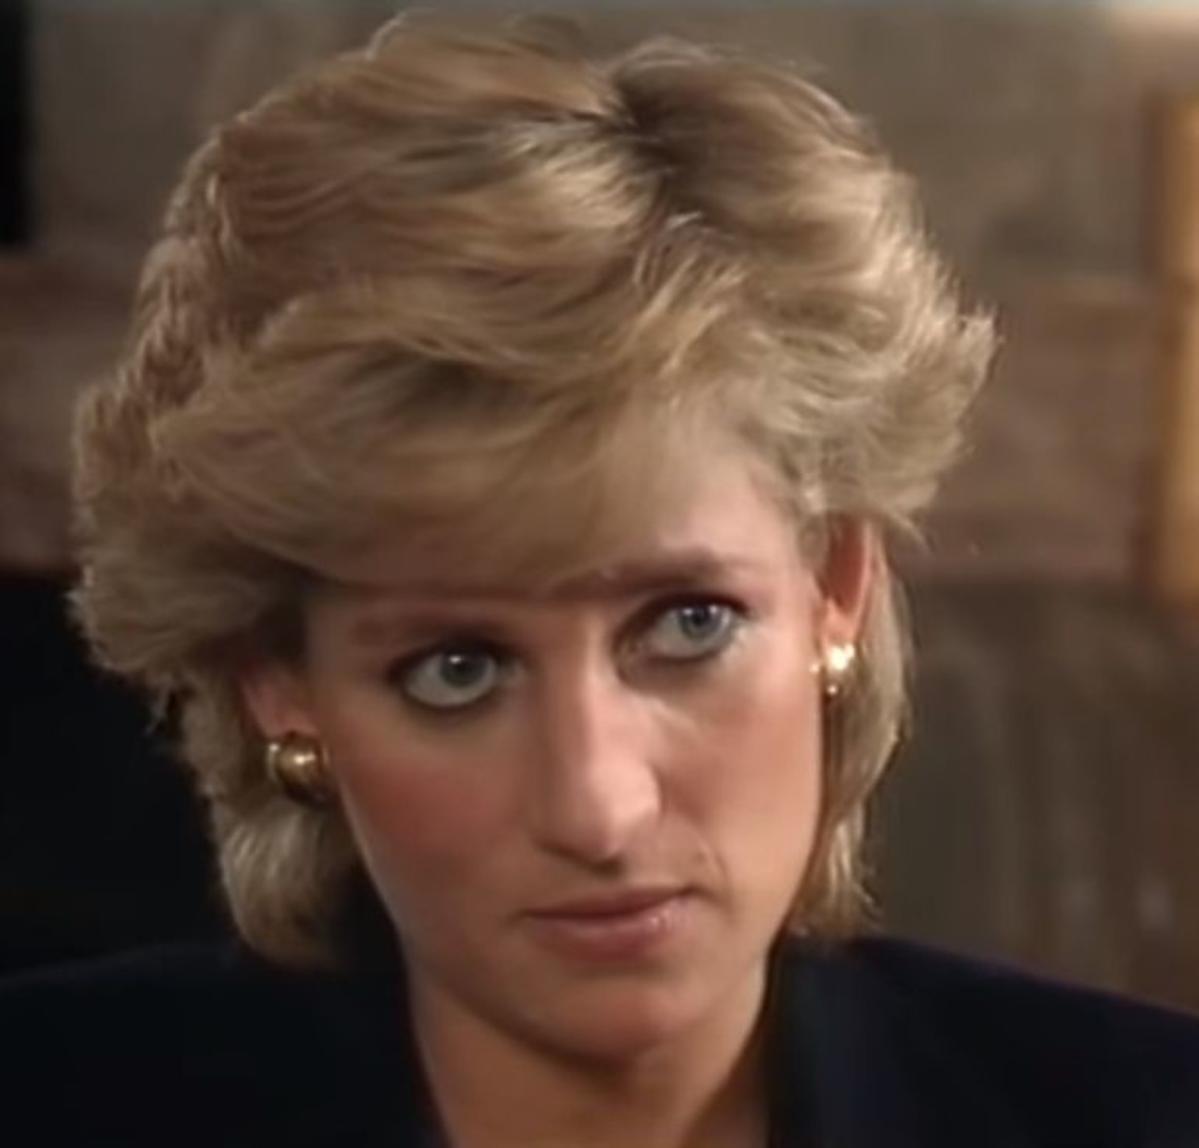 Księżna Diana wywiad 1995 rok 